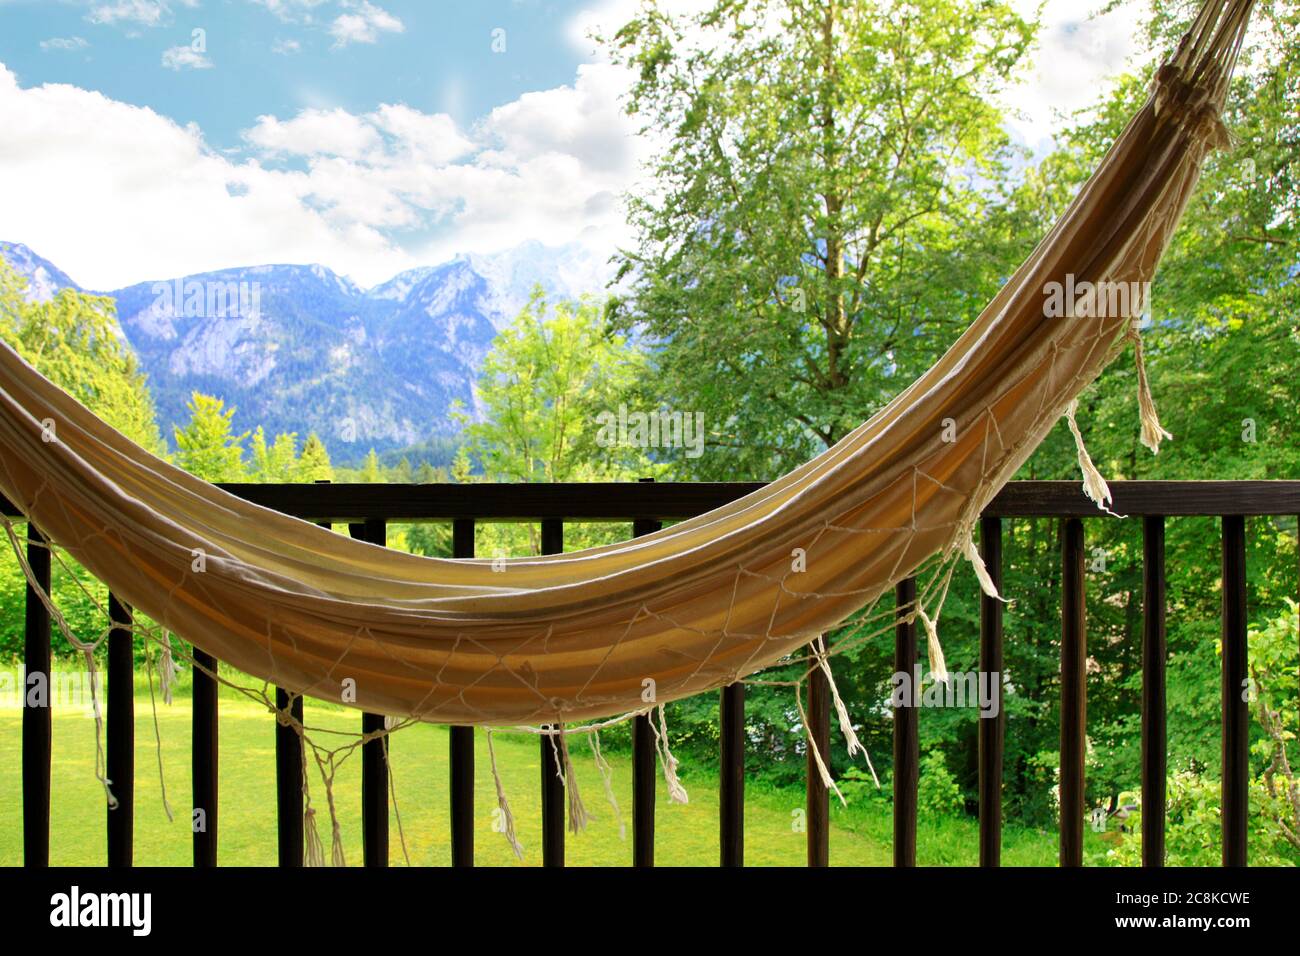 Hängende Hängematte für Entspannung auf einem Holzbalkon und alpen  Hintergrund. Idyllischer Urlaub in einer Hängematte auf dem Balkon Blick  auf die Bergkette wetterstein Stockfotografie - Alamy